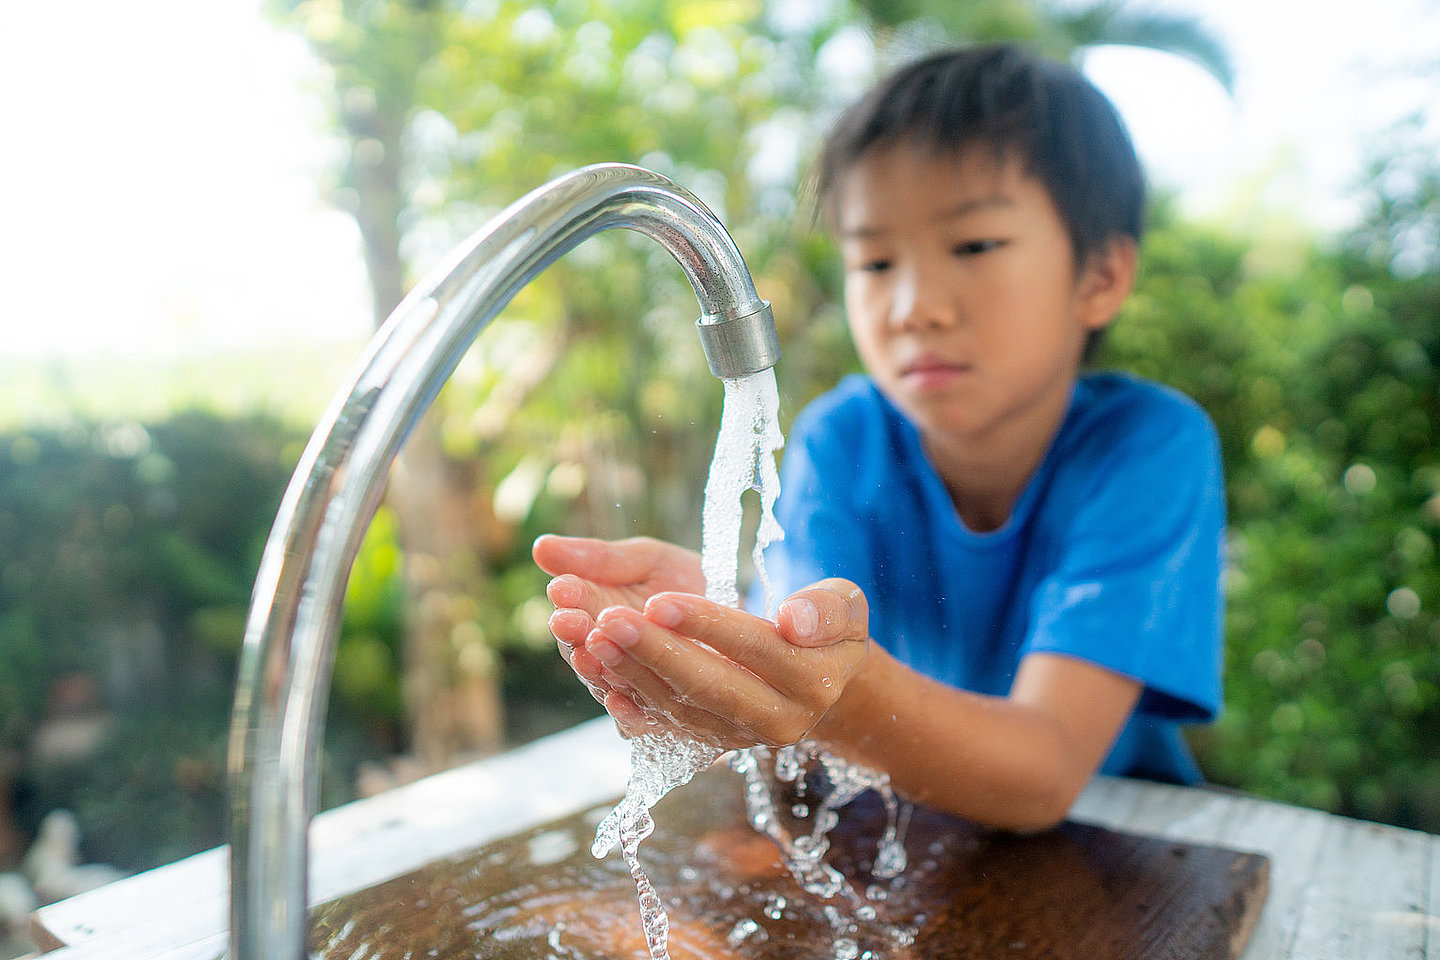 Junge wäscht seine Hände an einem Wasserhahn im Garten